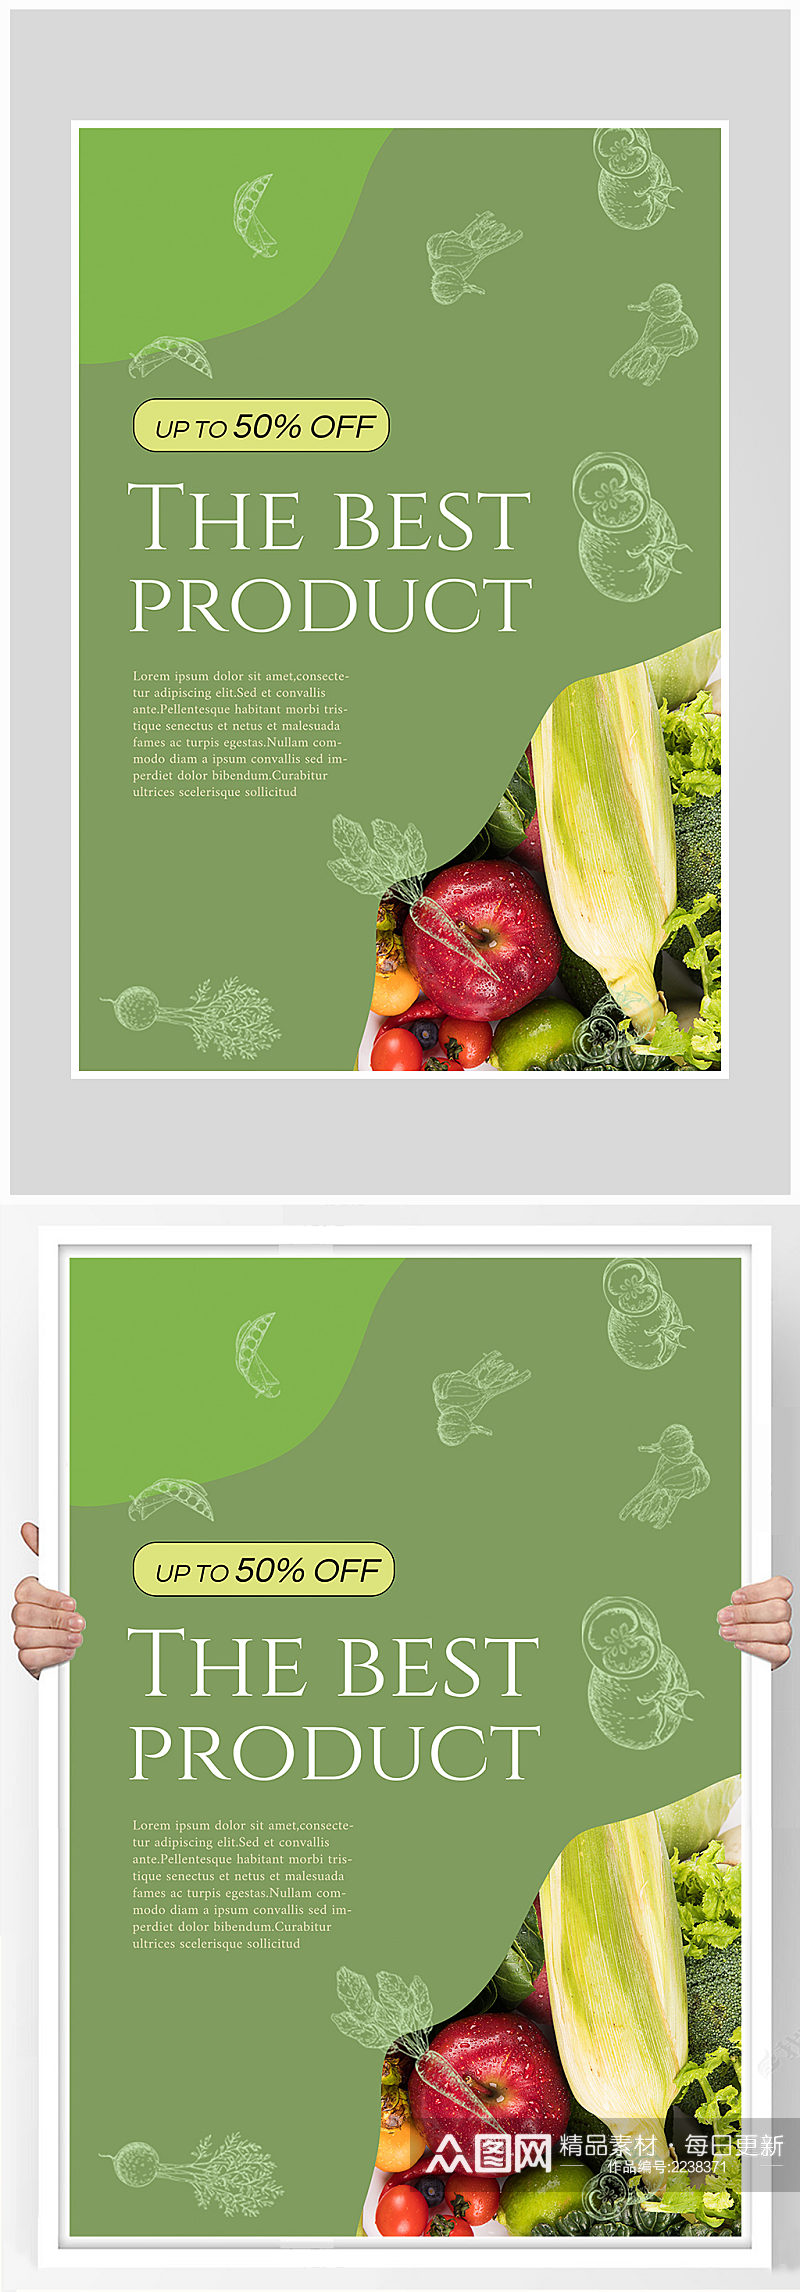 创意大气简约蔬菜沙拉海报设计素材